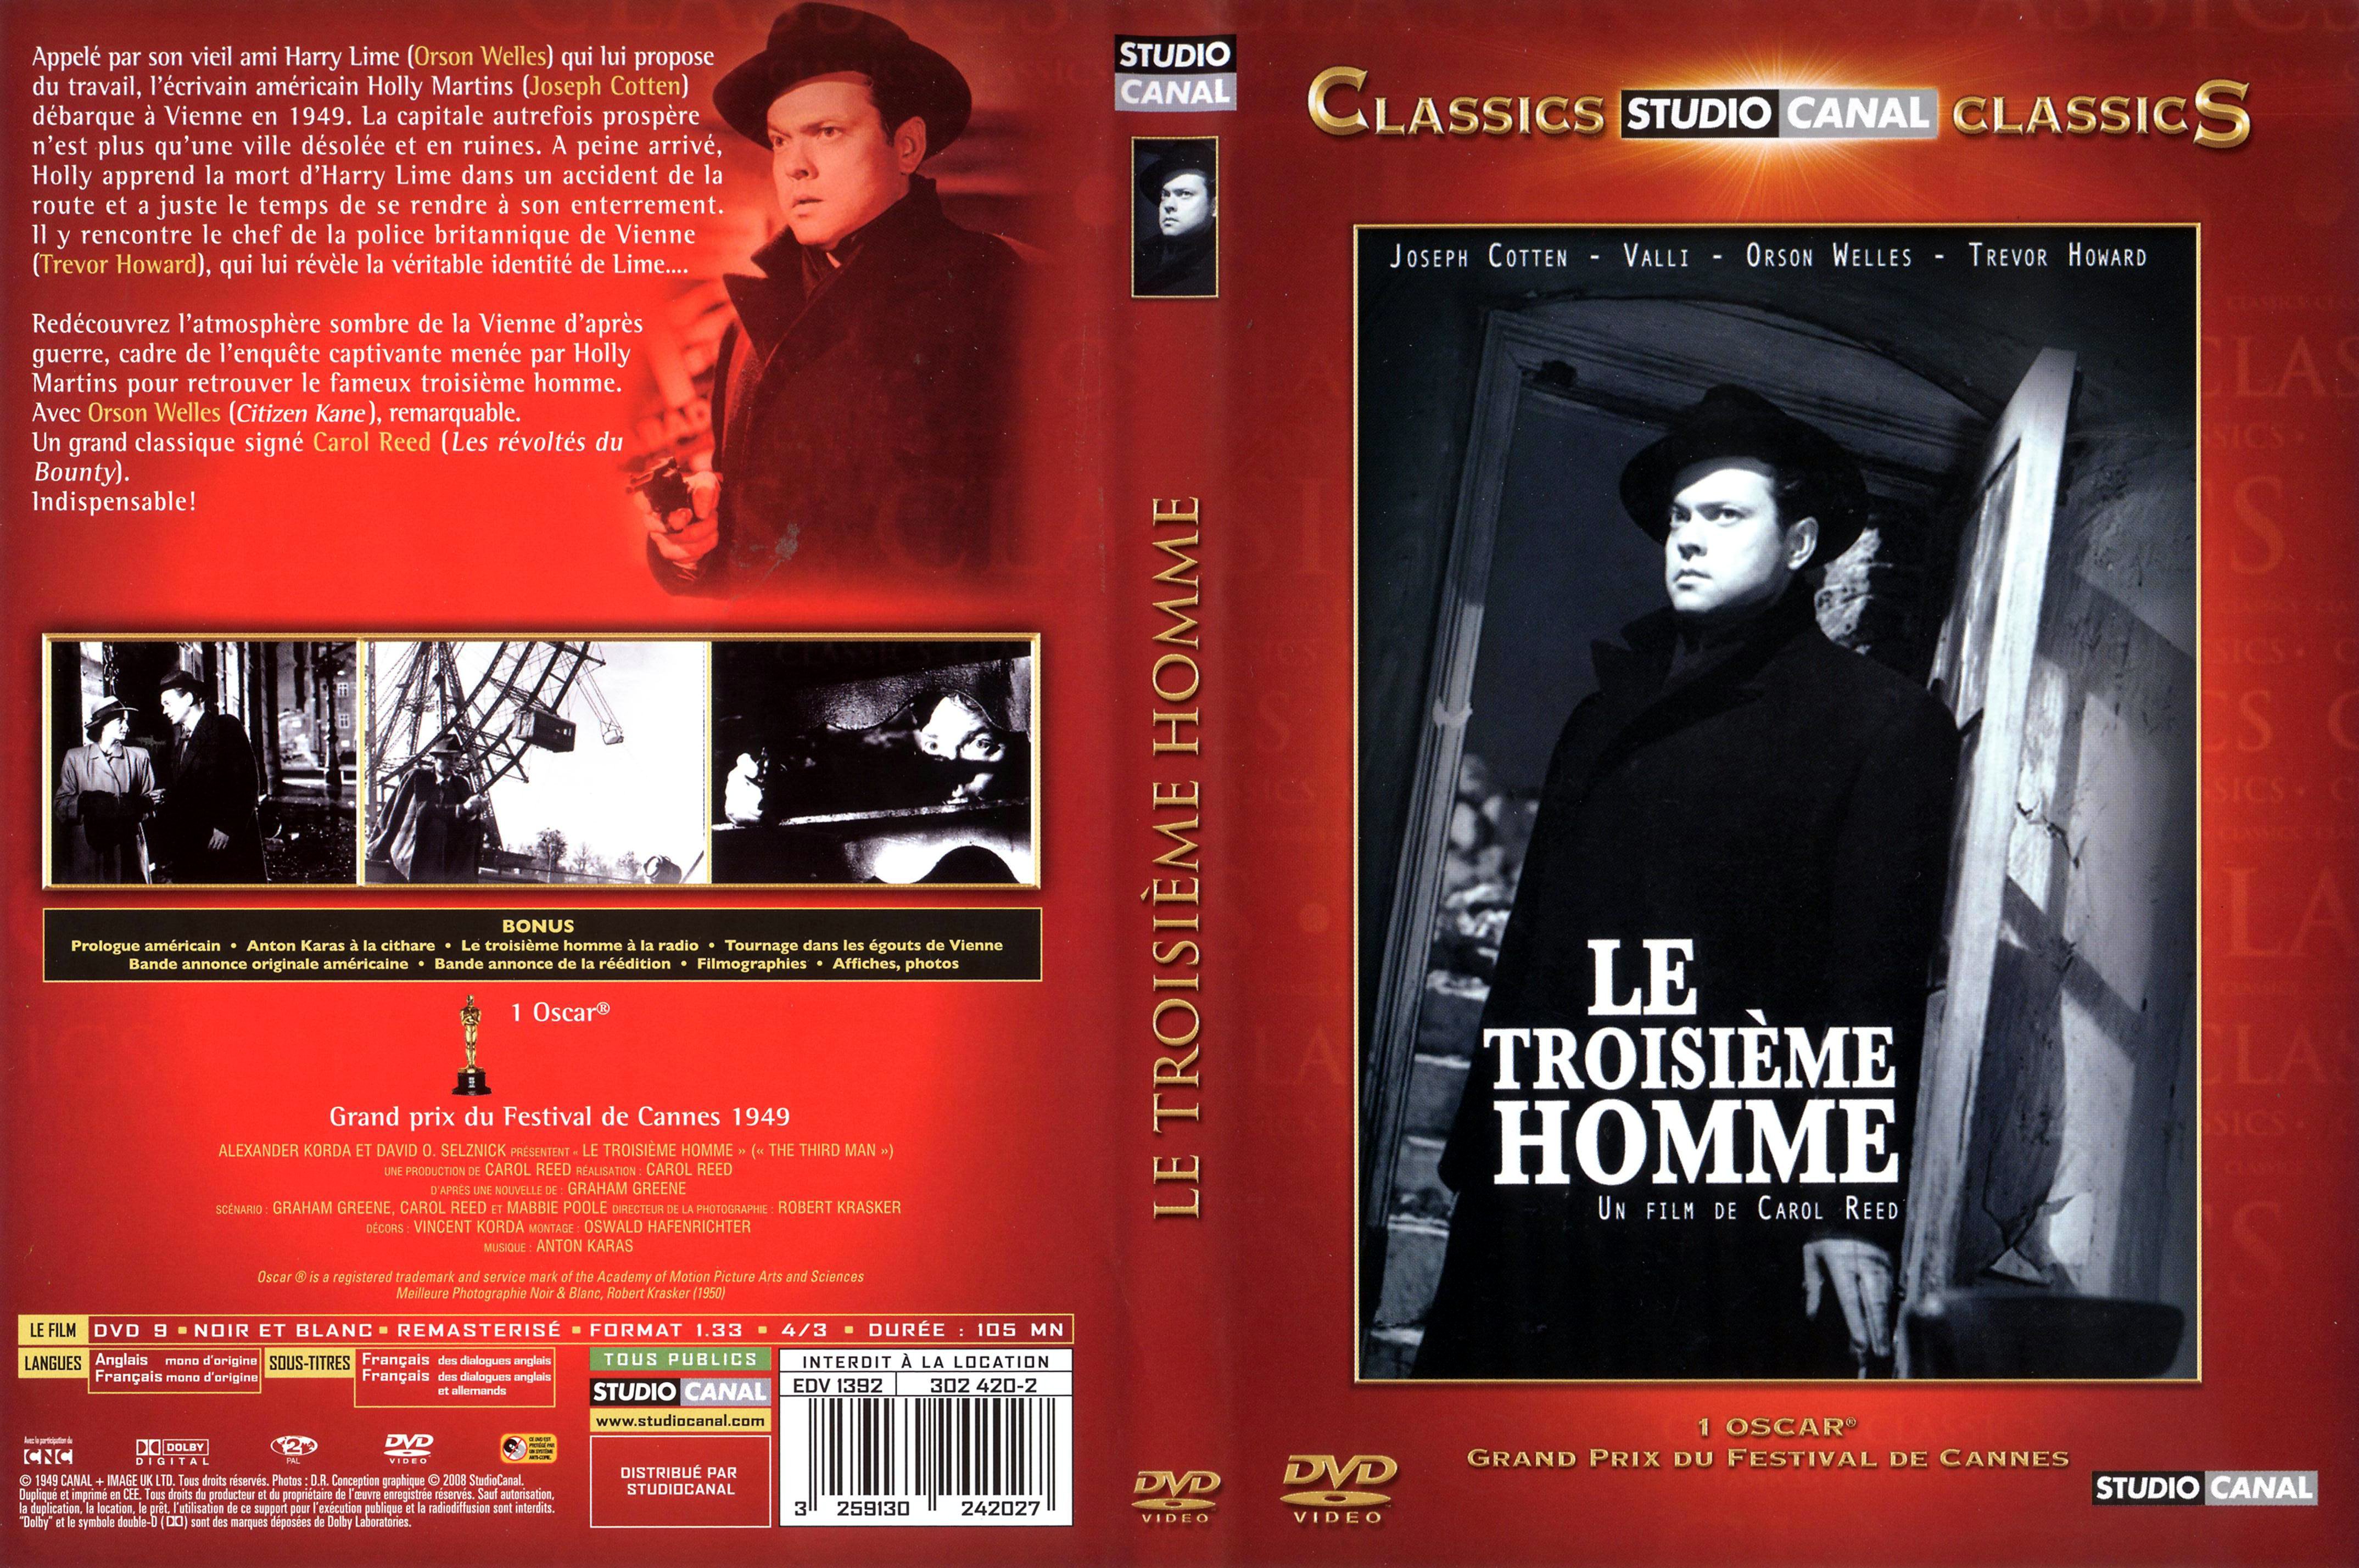 Jaquette DVD Le troisime homme v2